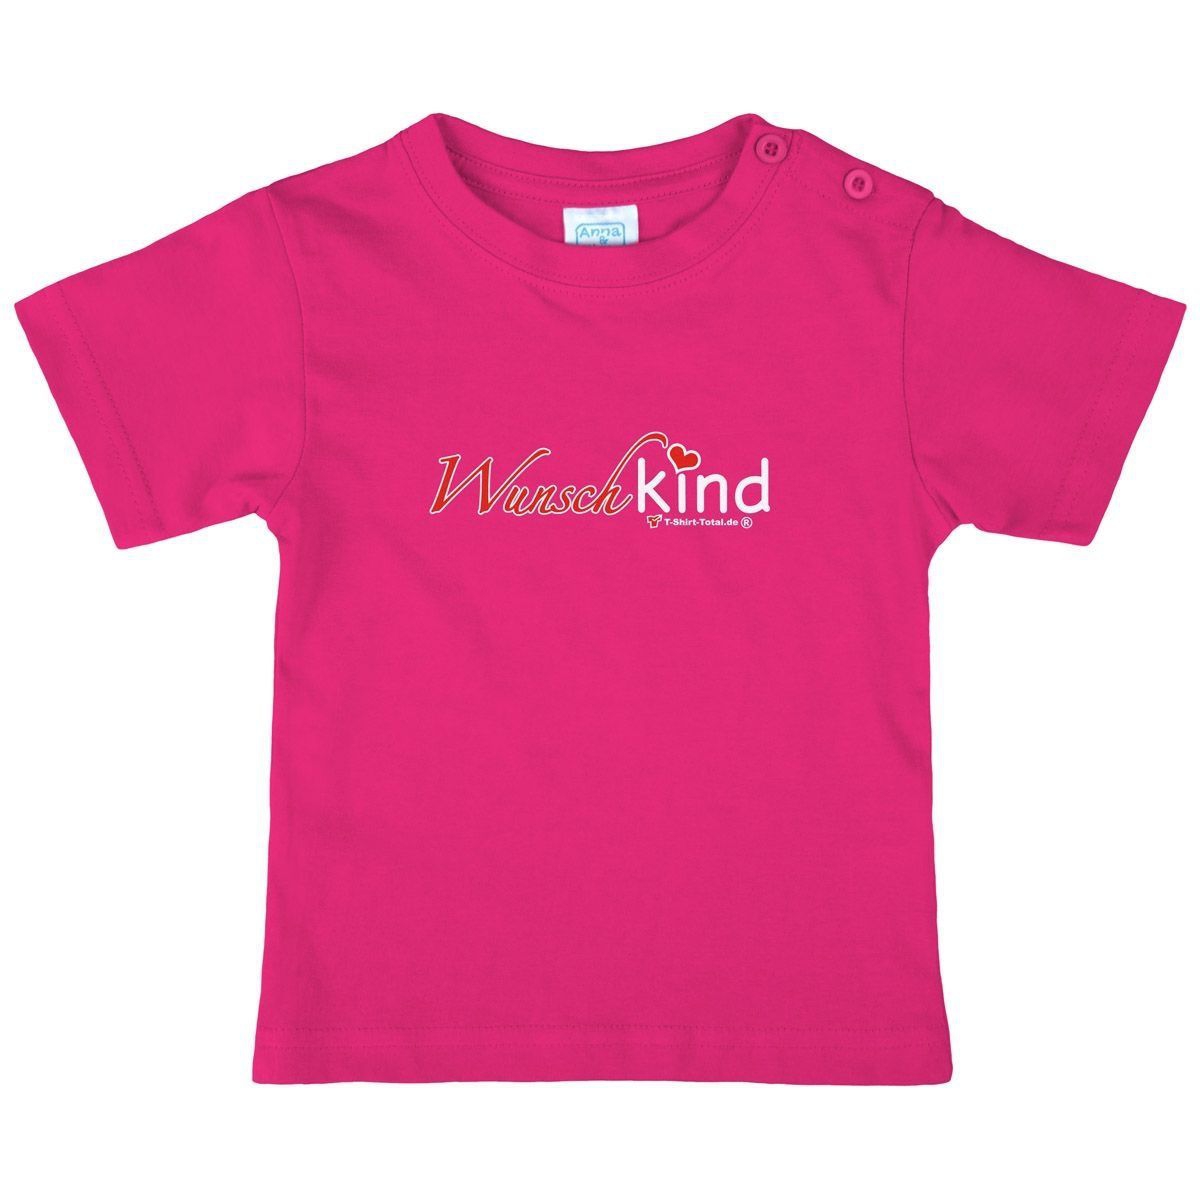 Wunschkind Kinder T-Shirt pink 56 / 62